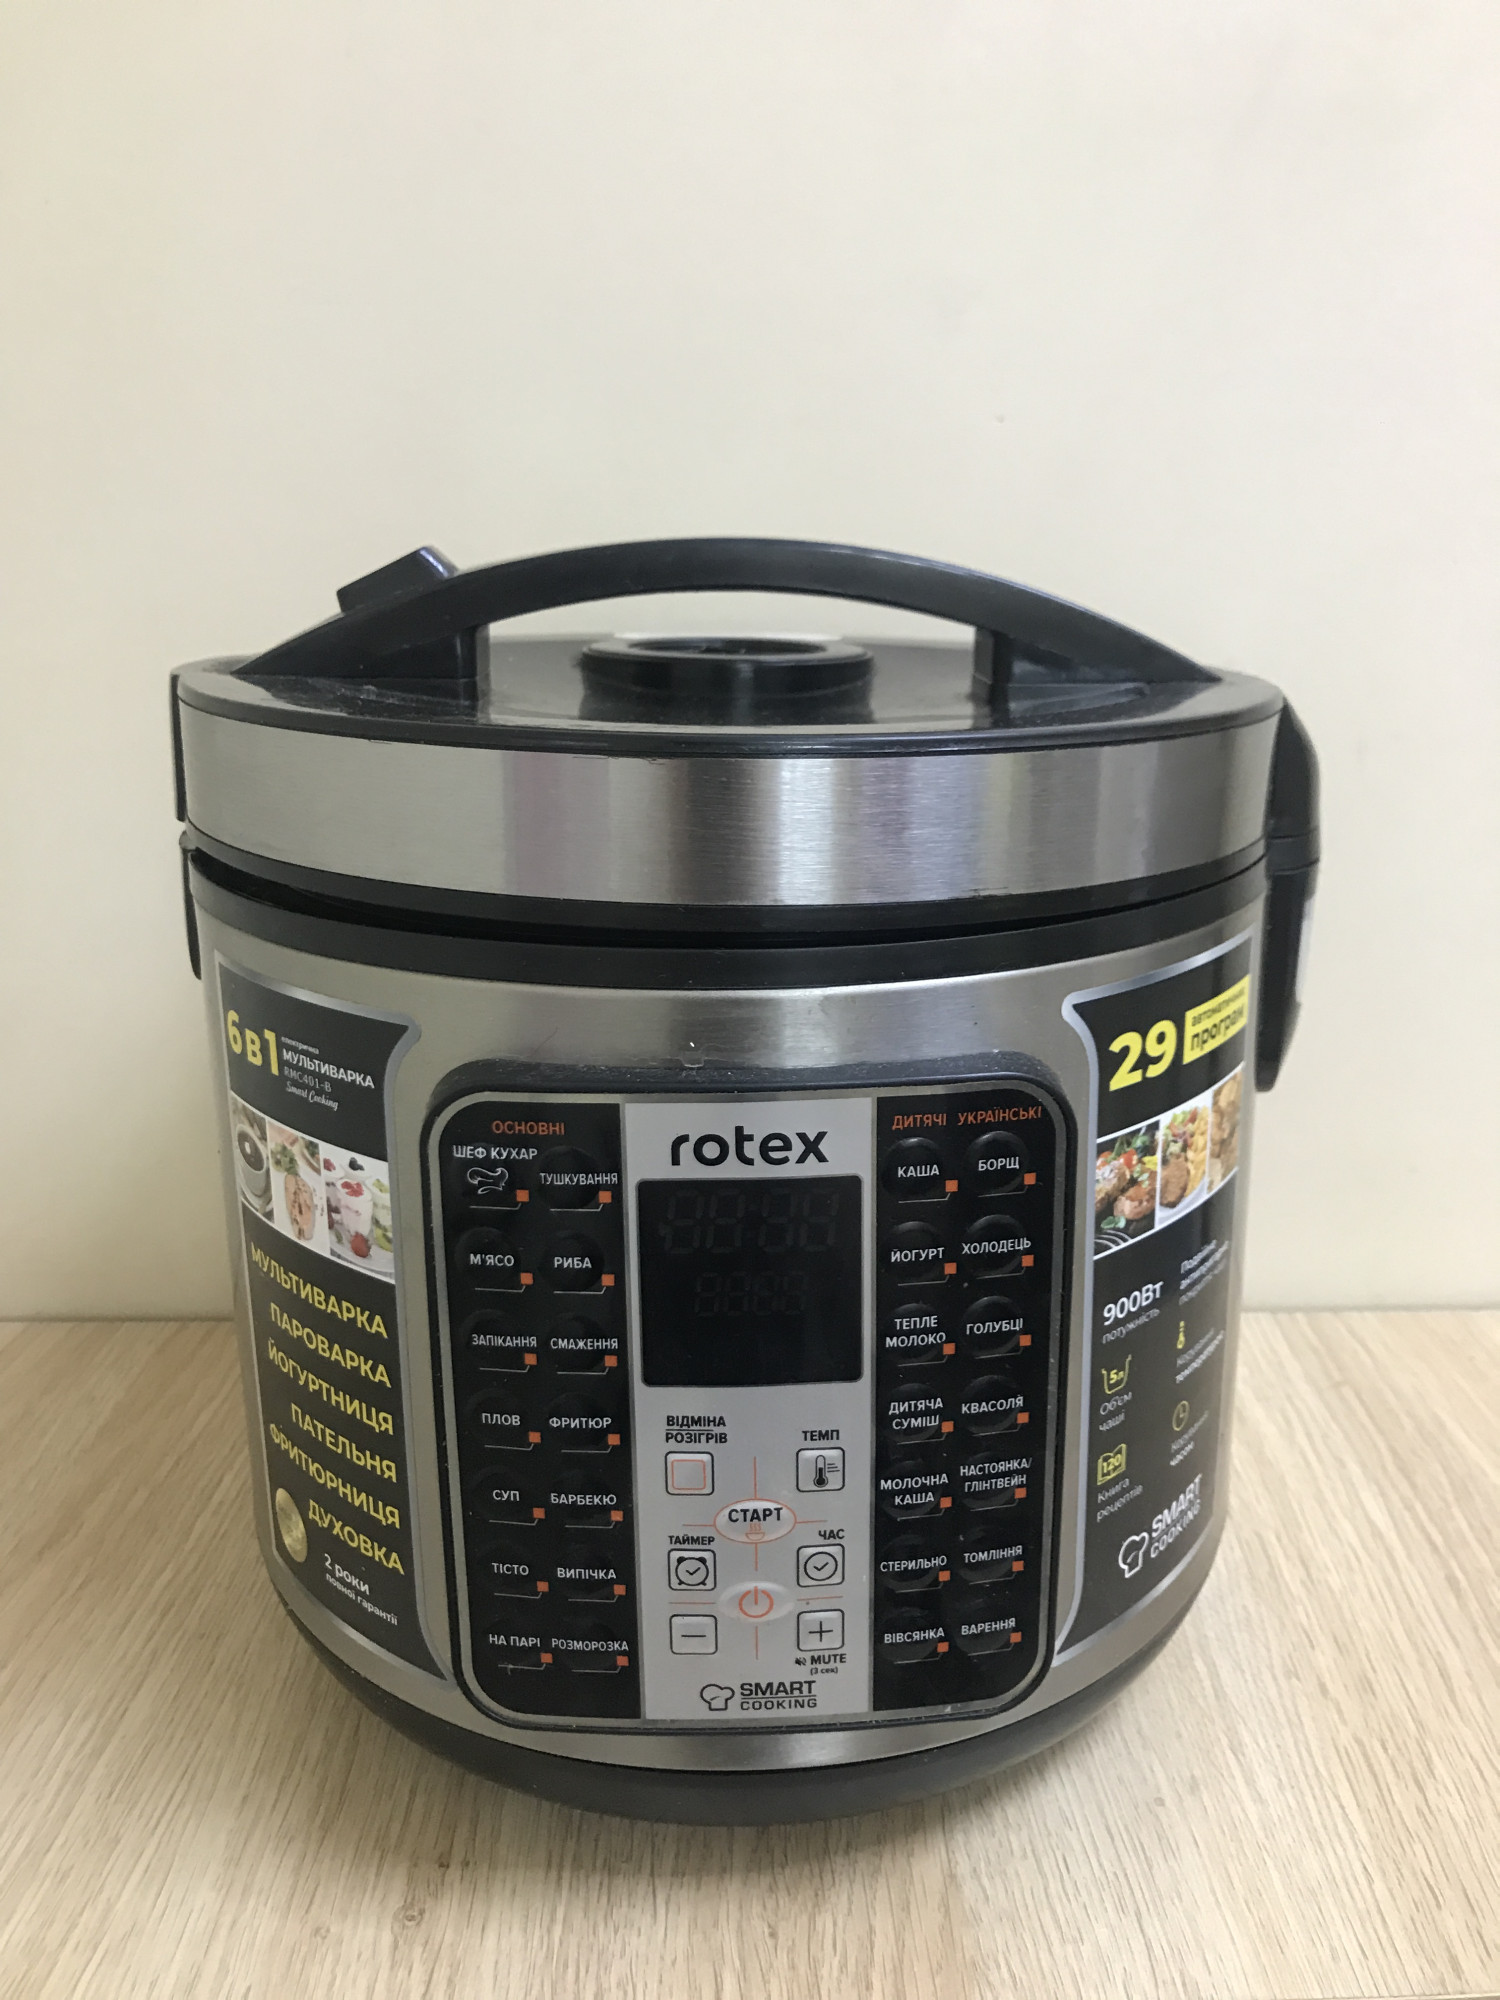 Мультиварка Rotex RMC401-B 0